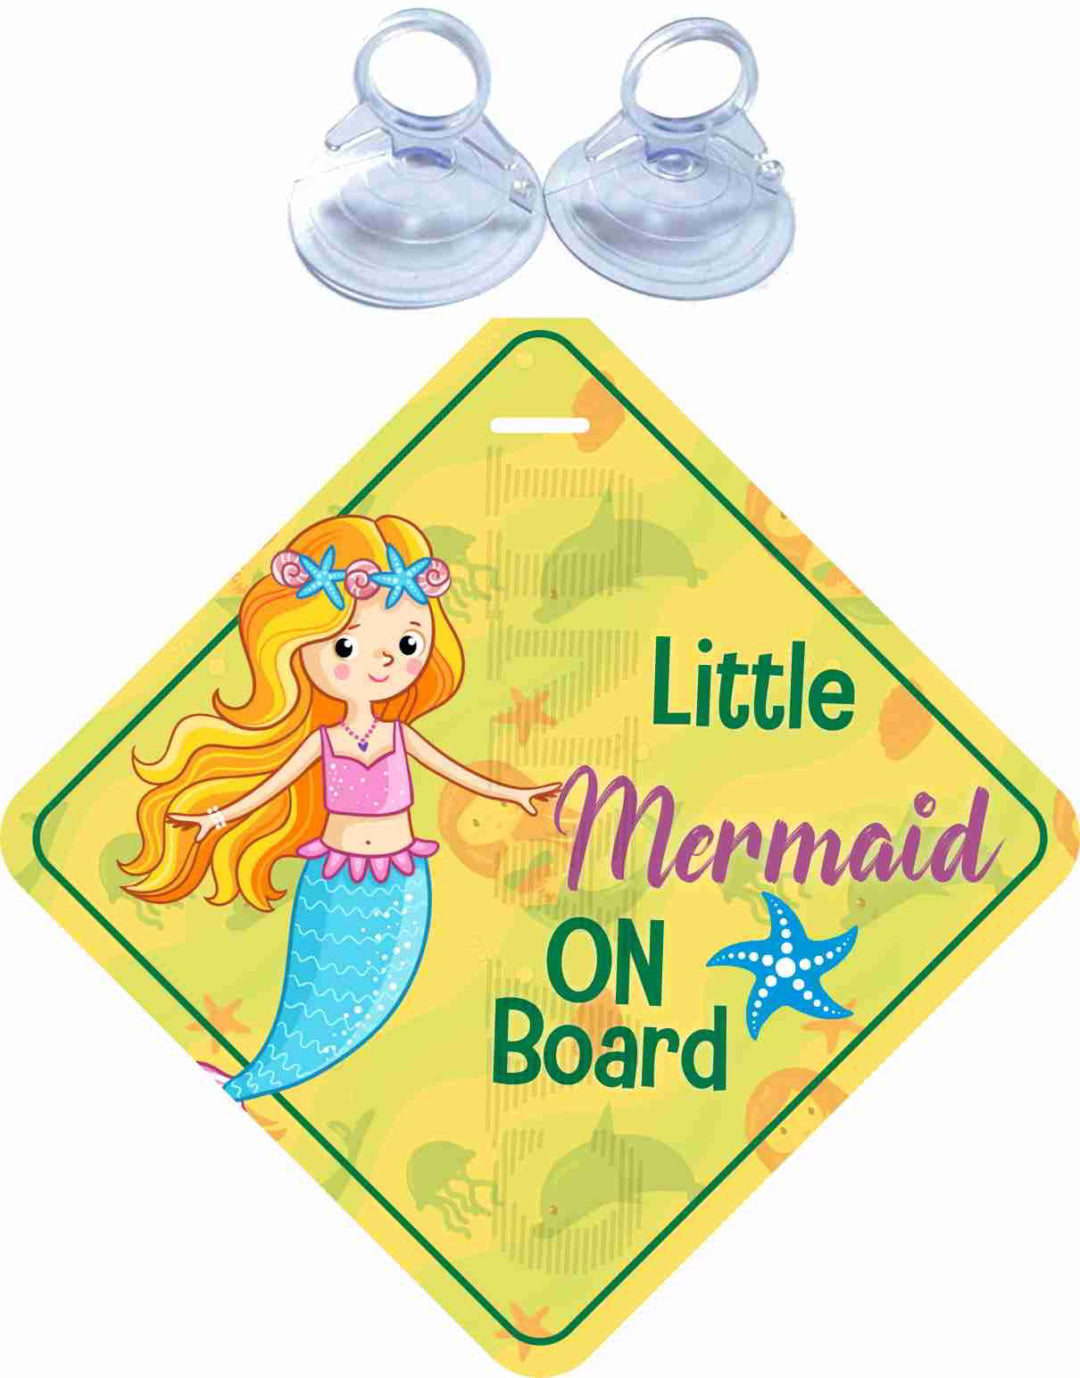 Little Mermaid on Board Safety Sticker